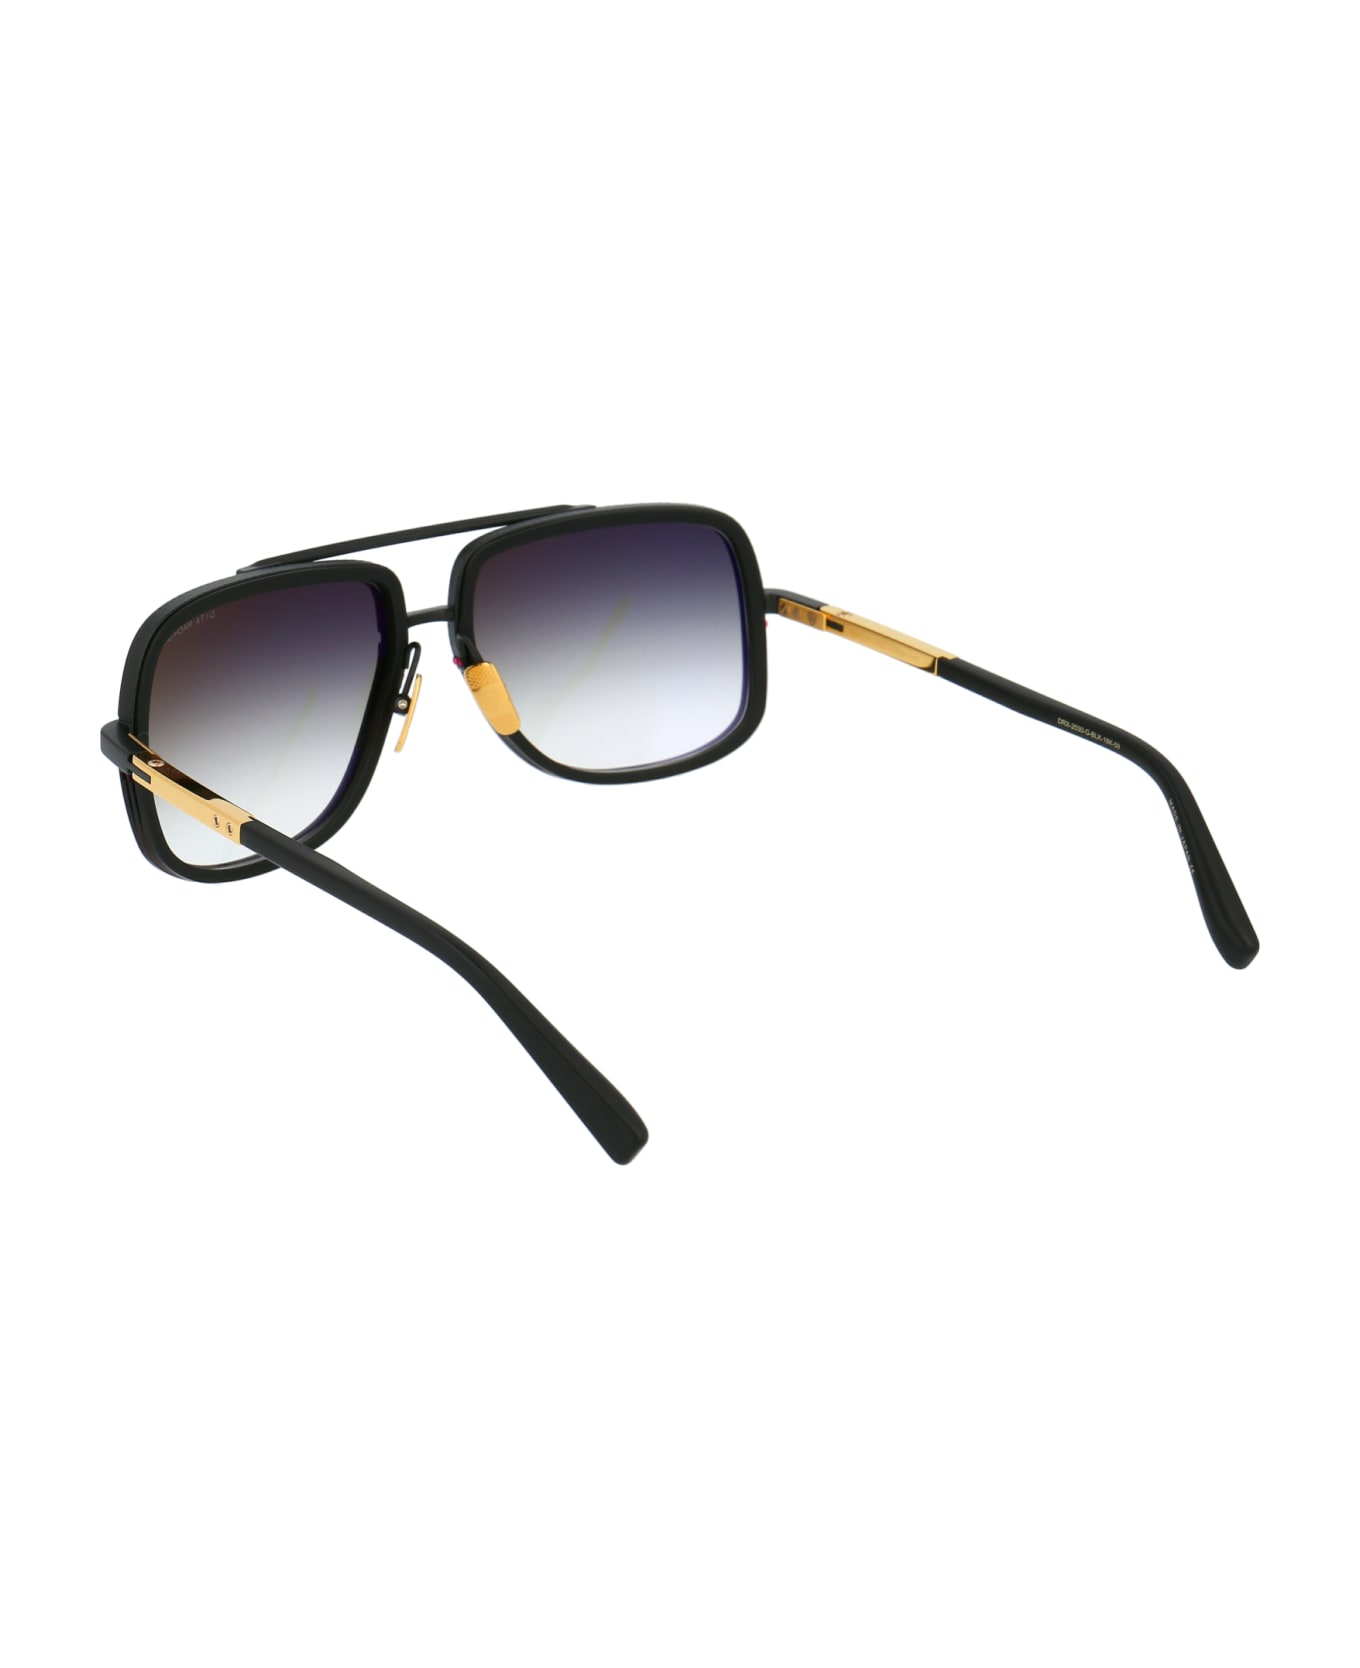 Dita Mach-one Sunglasses - Matte Black-Matte Black